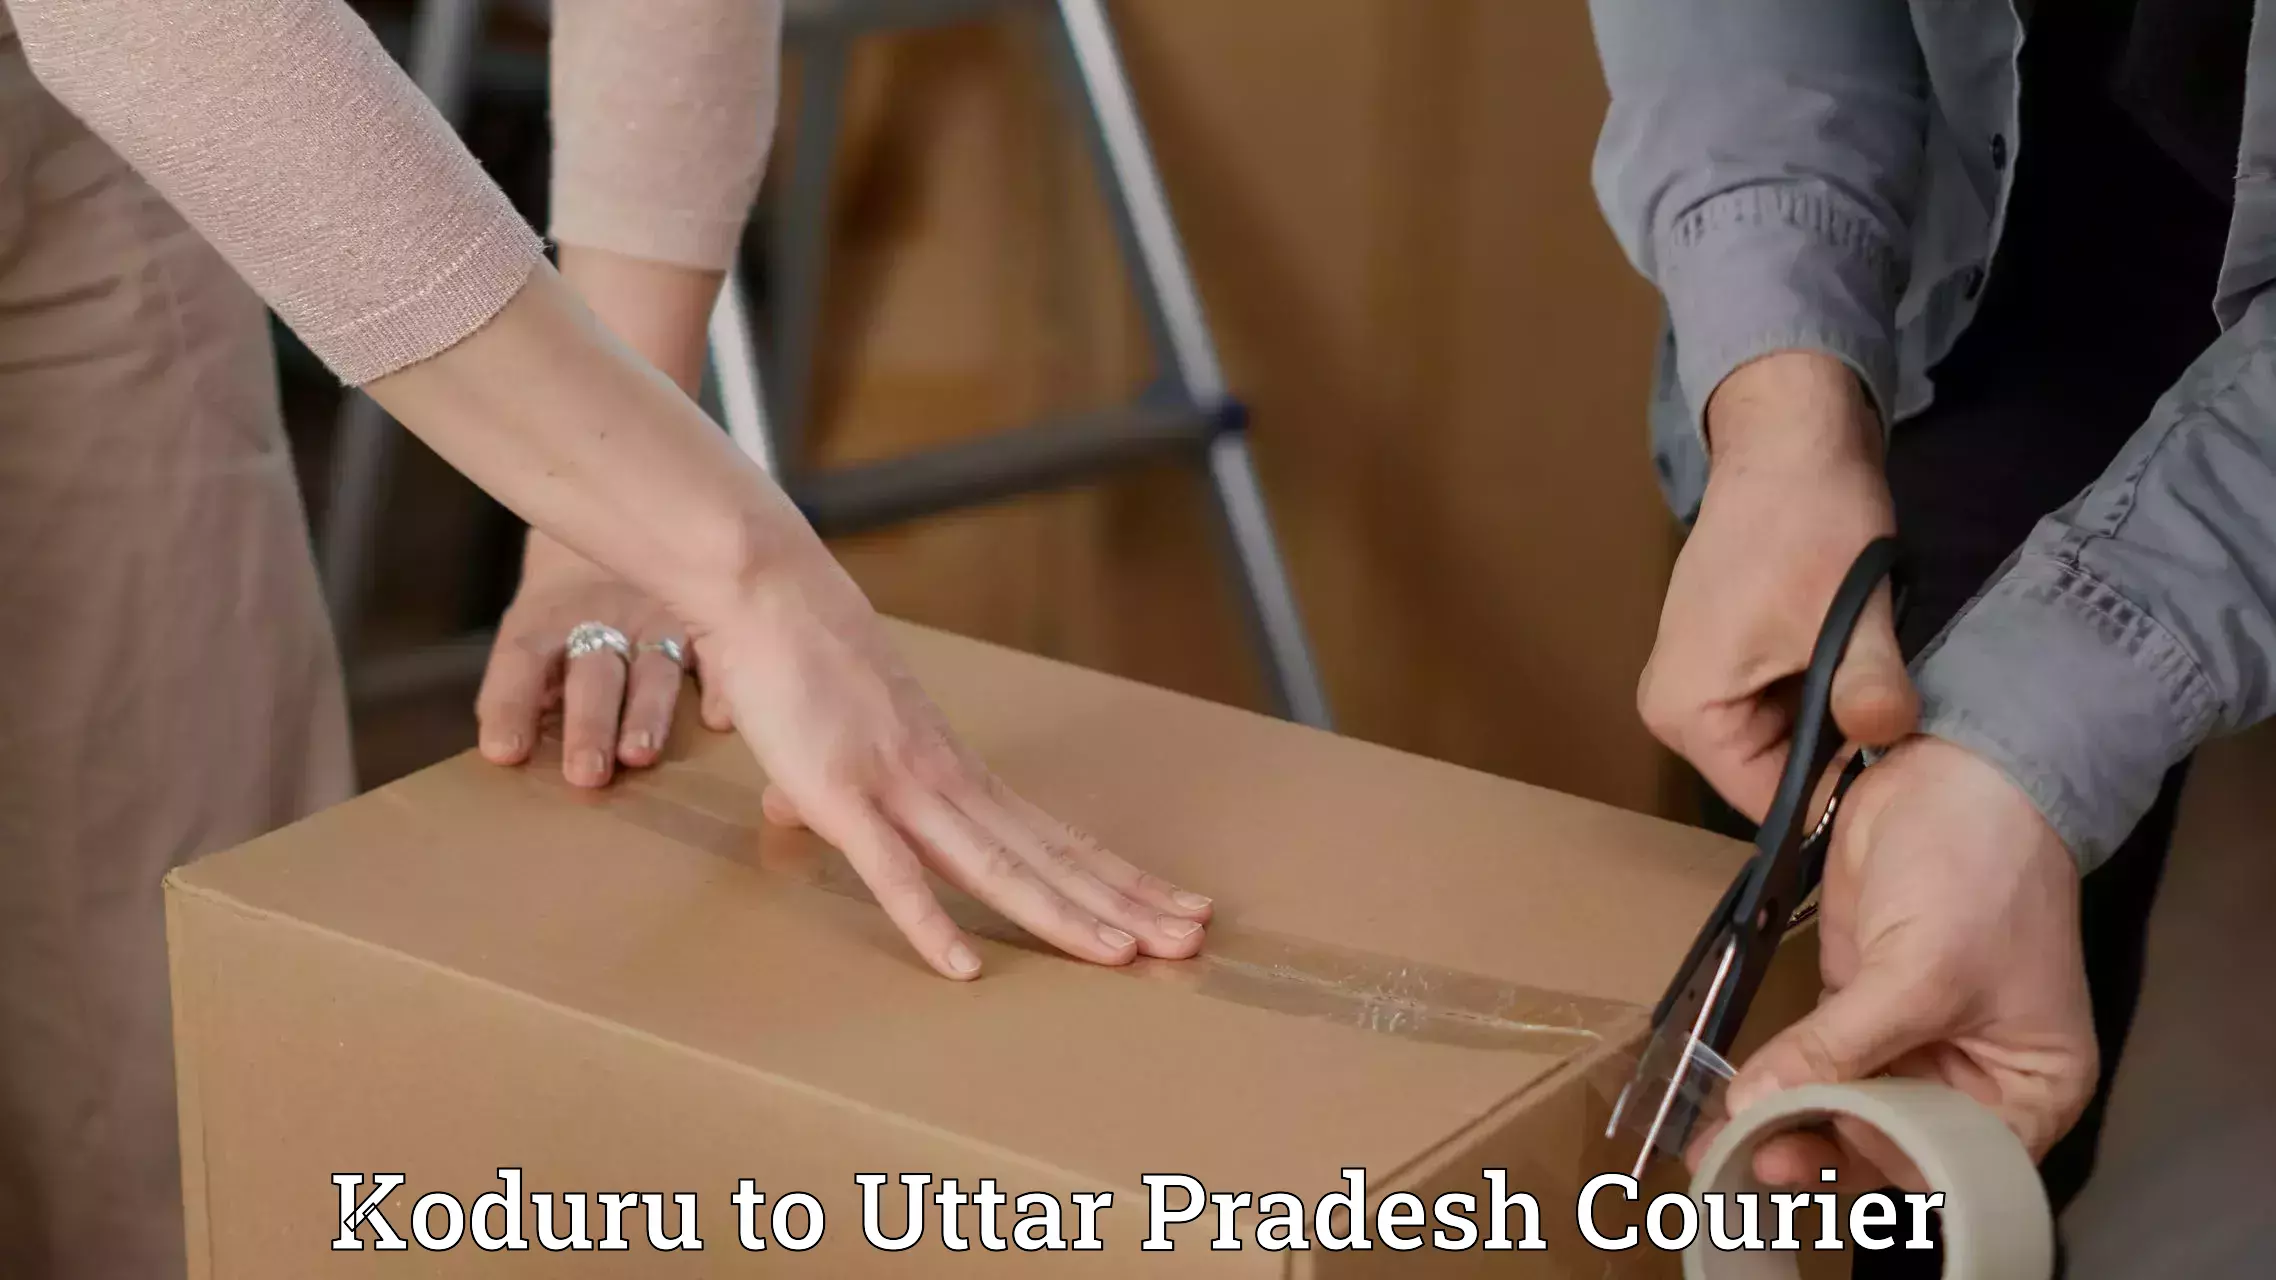 Multi-city courier Koduru to Uttar Pradesh